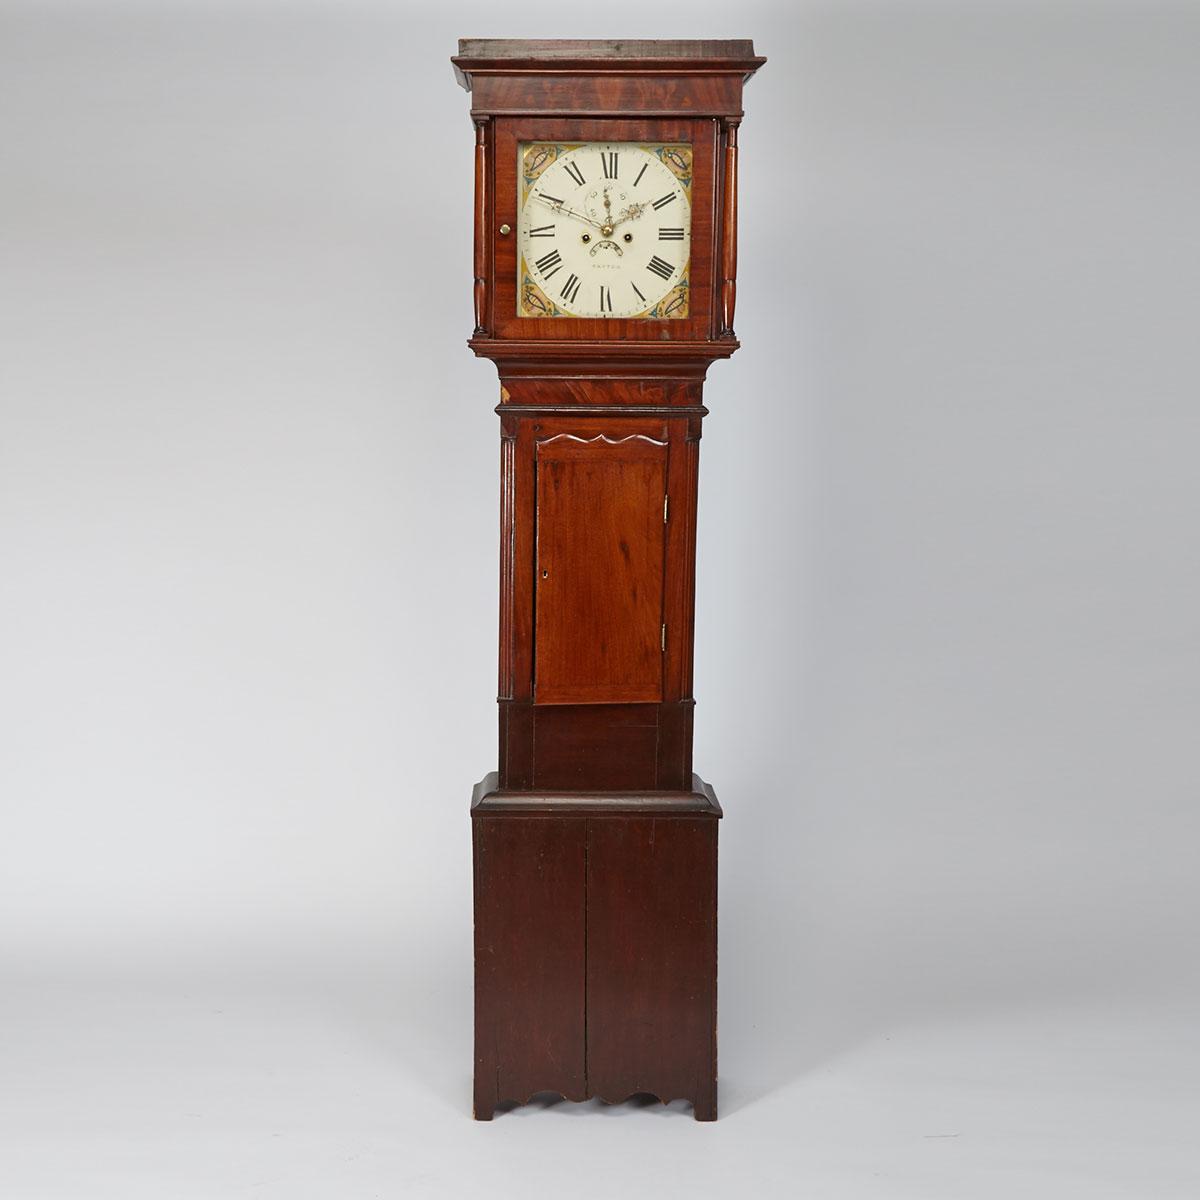 English Mahogany Tall Case Clock, Patton, 19th century